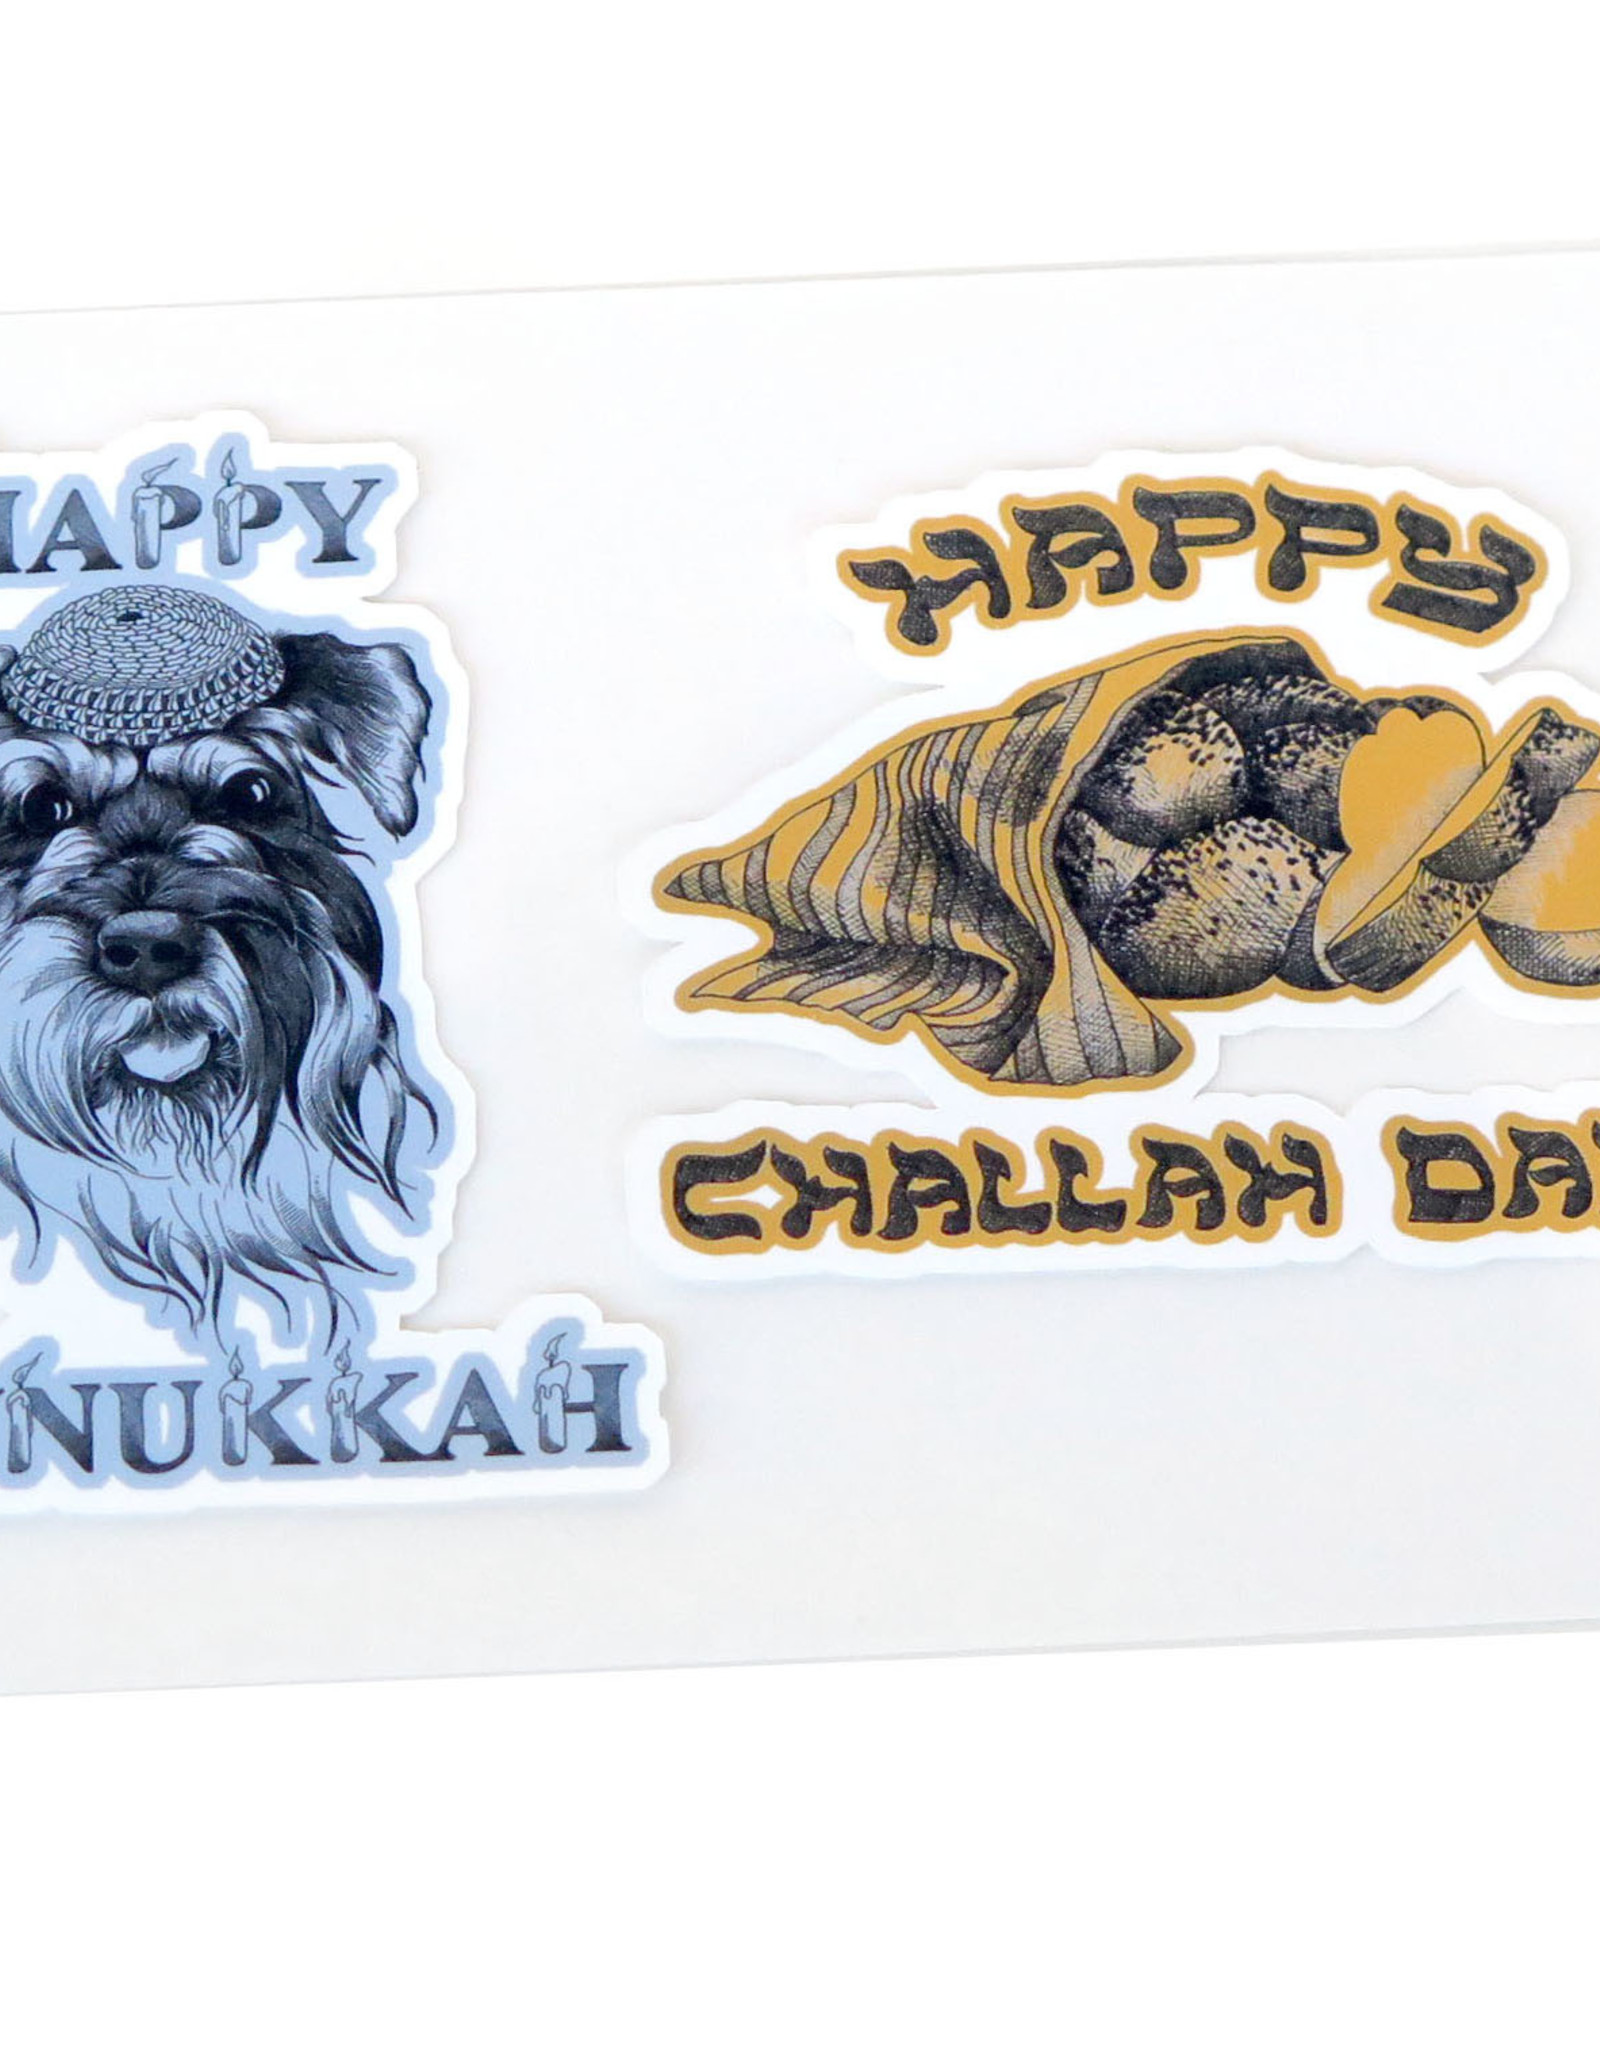 All4Pun Hanukkah Sticker 2-Pack by Scott Dickens, All4Pun